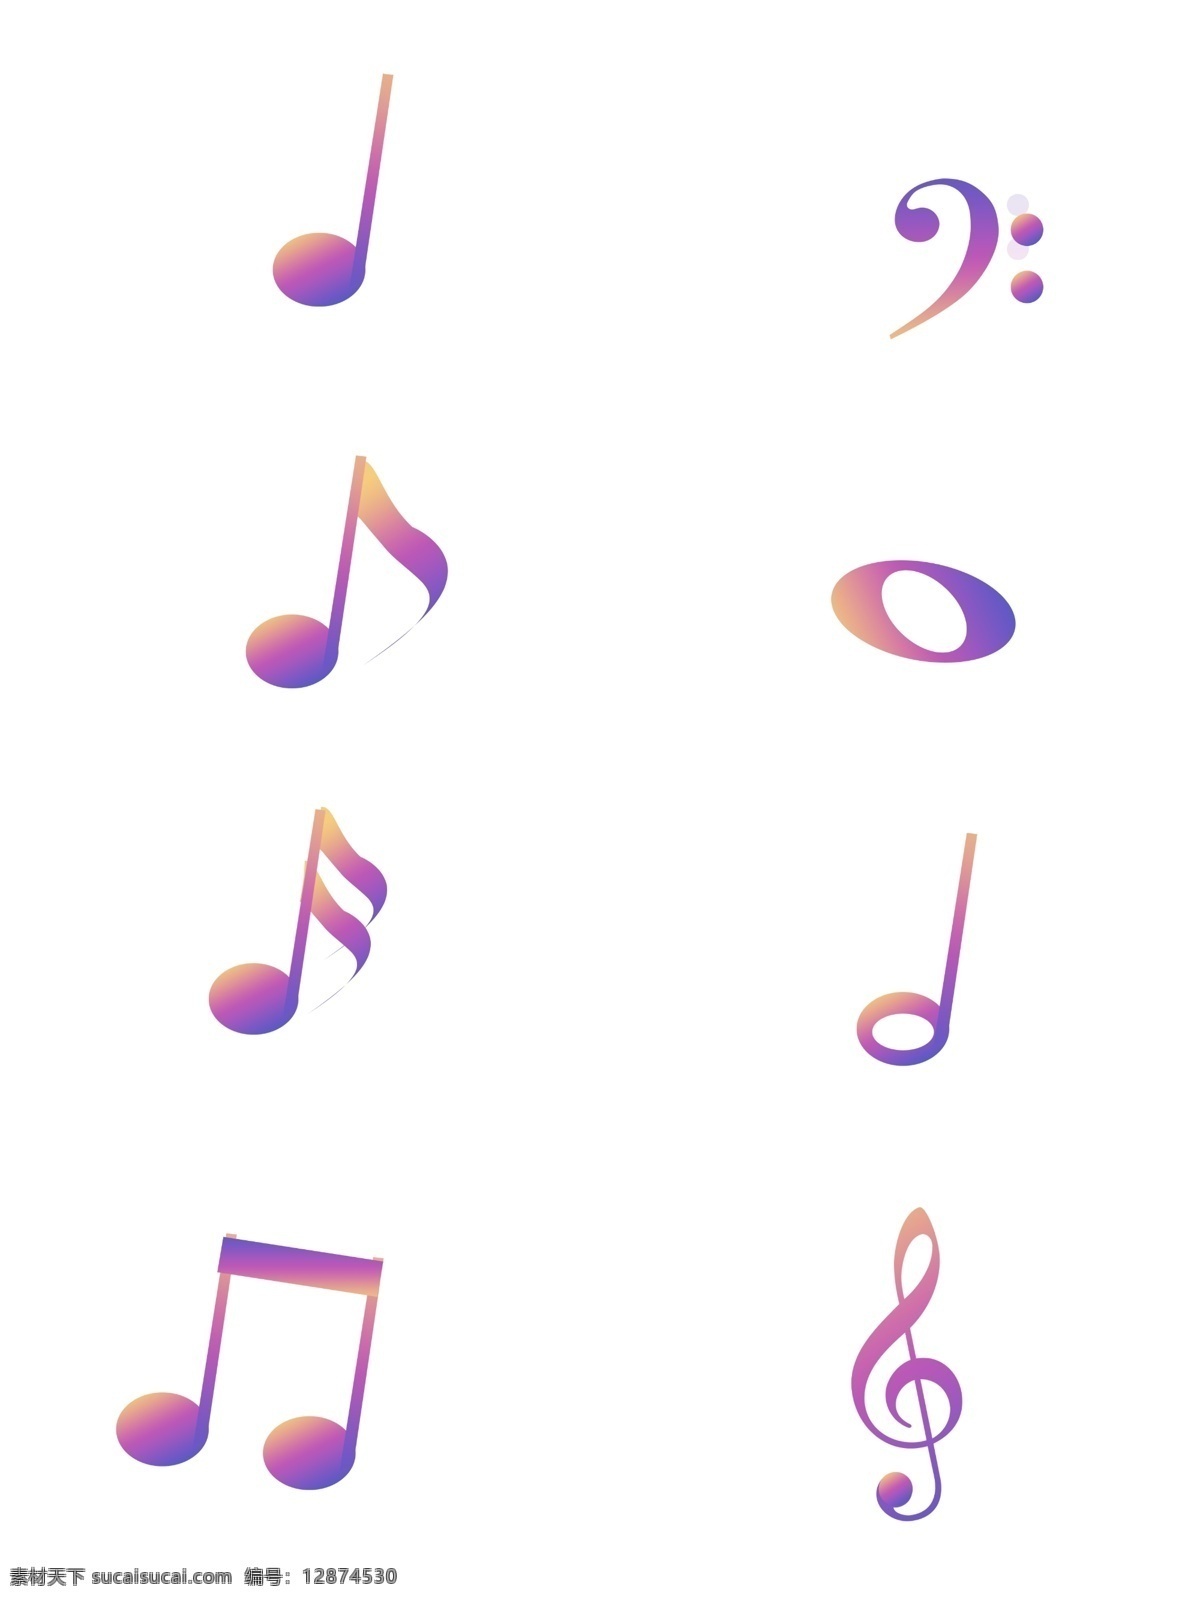 音符素材 矢量音符 动感音符 动感 音乐 旋律 乐章 乐谱 韵律 符号 音乐标 音标 音 音符旋律 各种音符 音符设计 音乐符号 音标素材 艺术音符标志 创意素材 五线谱 跃动的音符 炫彩音乐 动感地带 动感音乐 流淌的音符 音符剪影 黑色音符